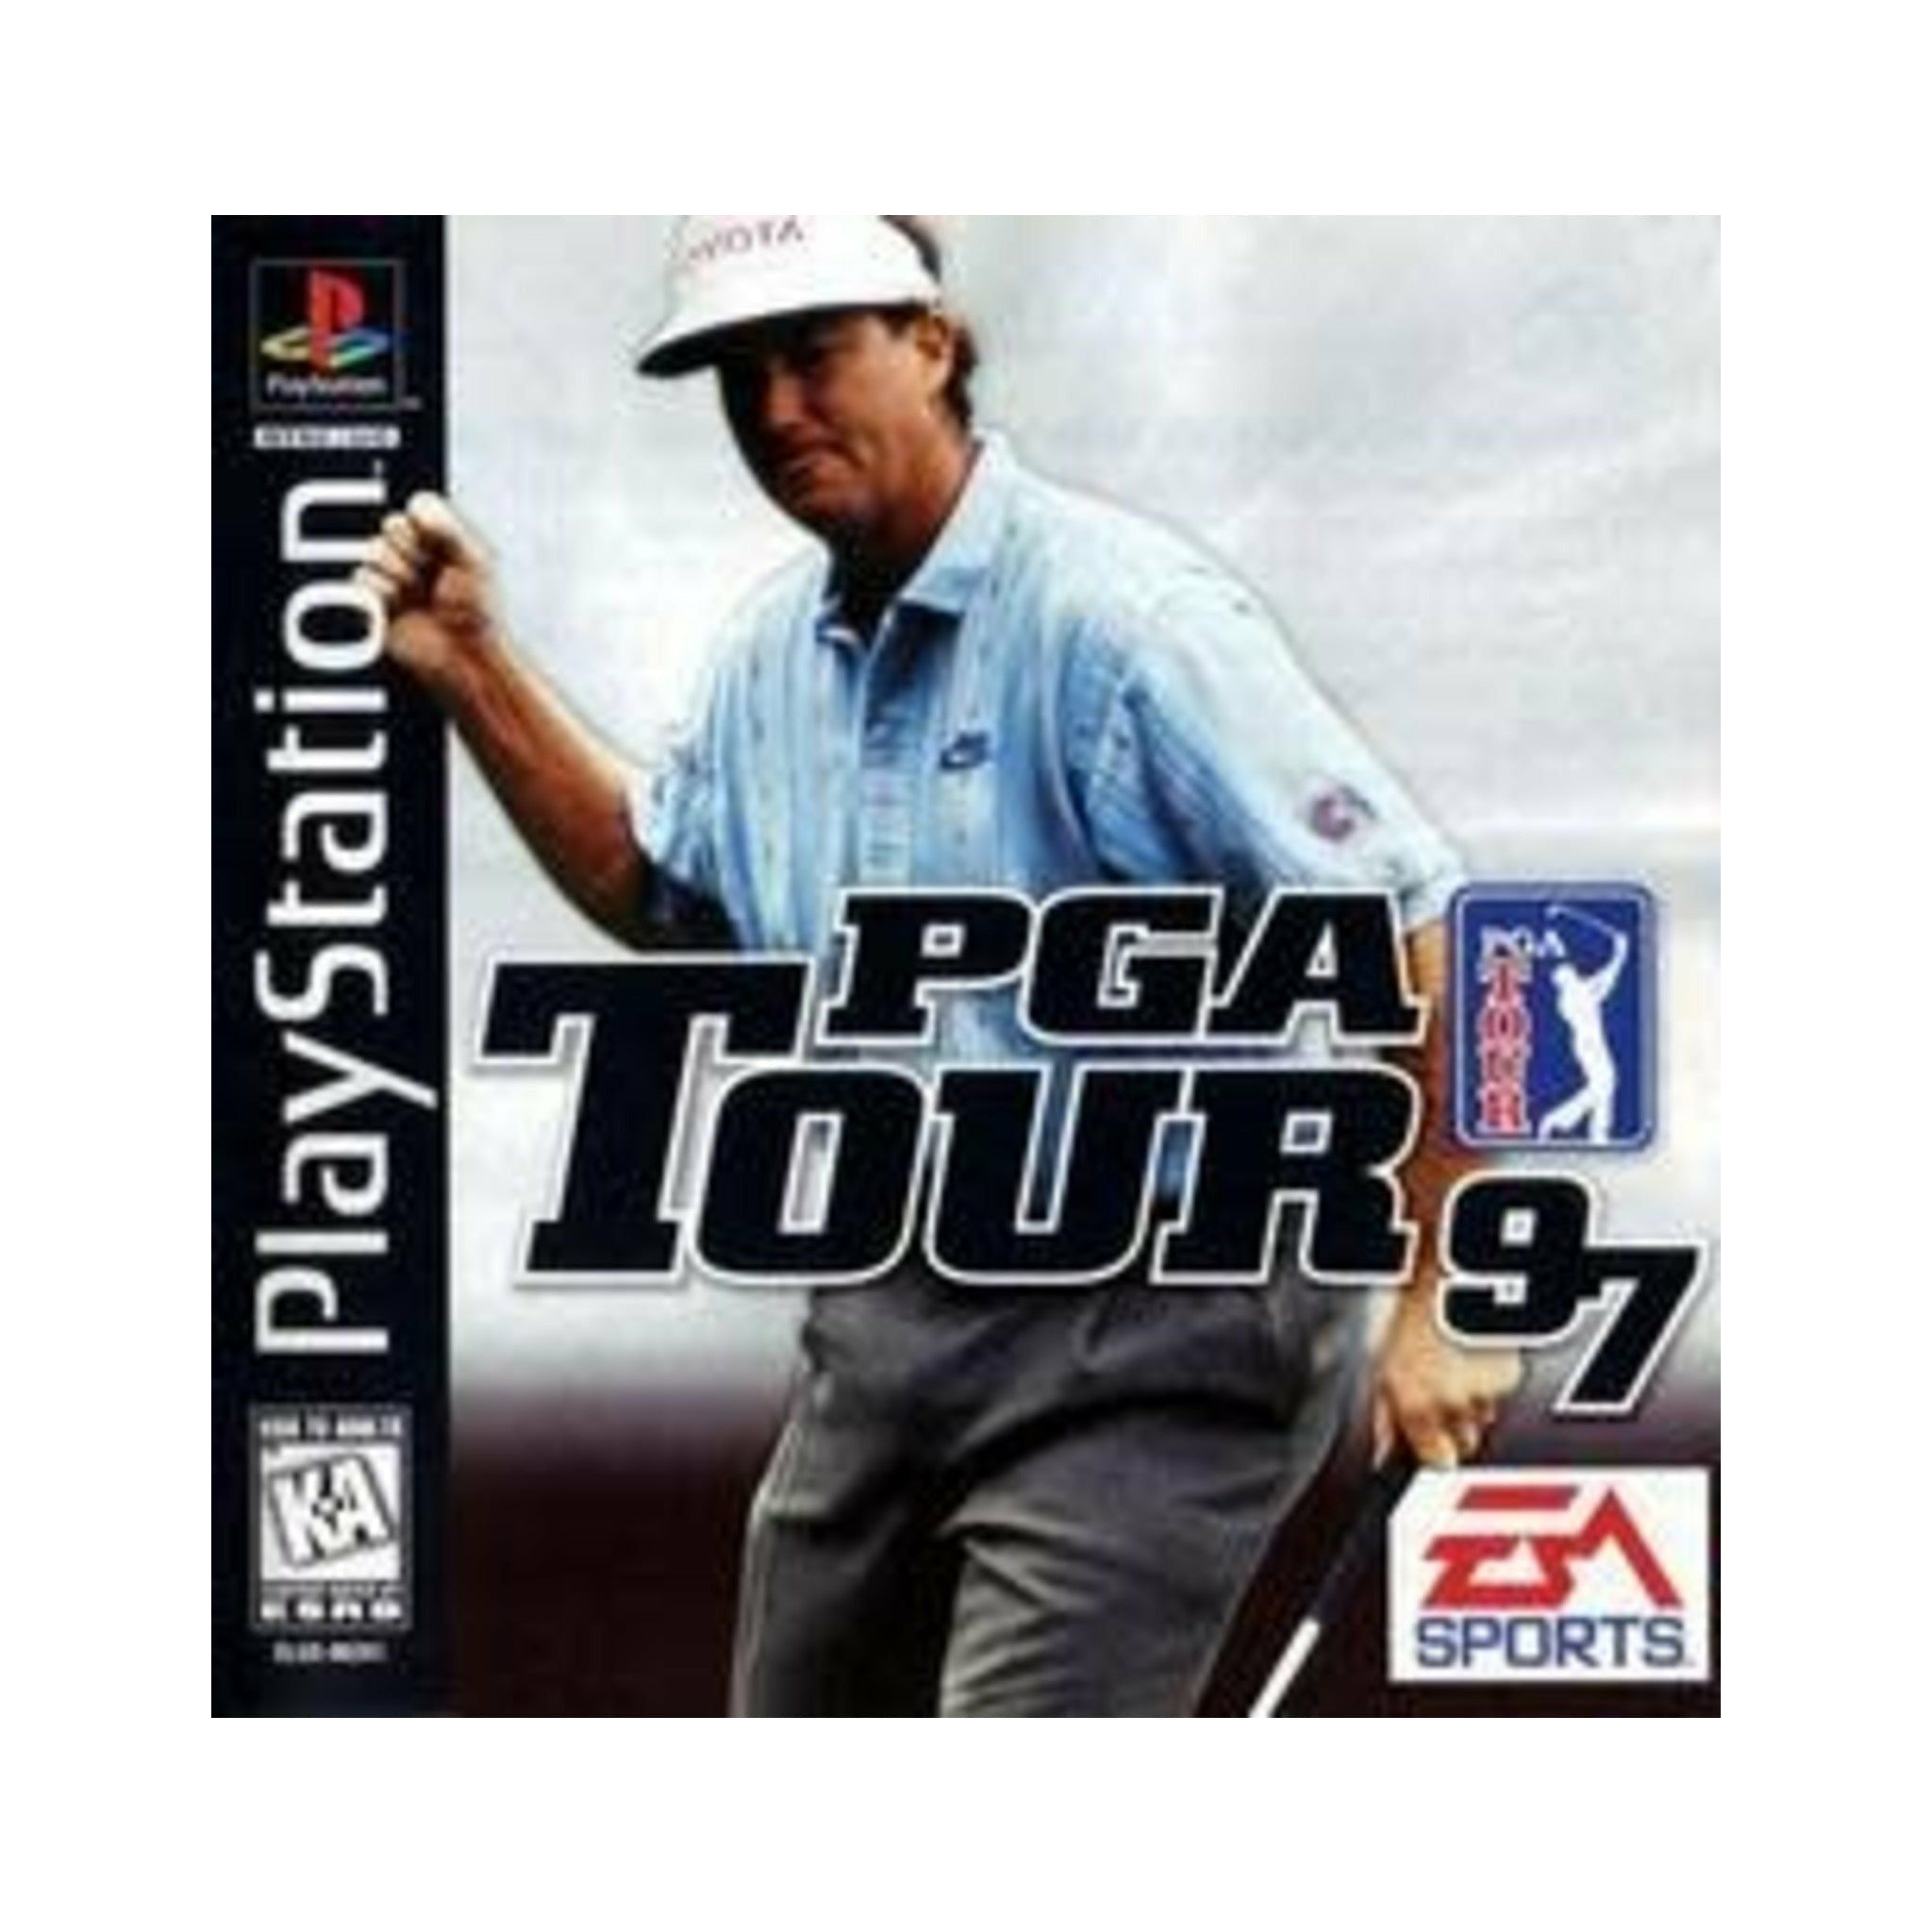 PS1 - Tournée PGA 97